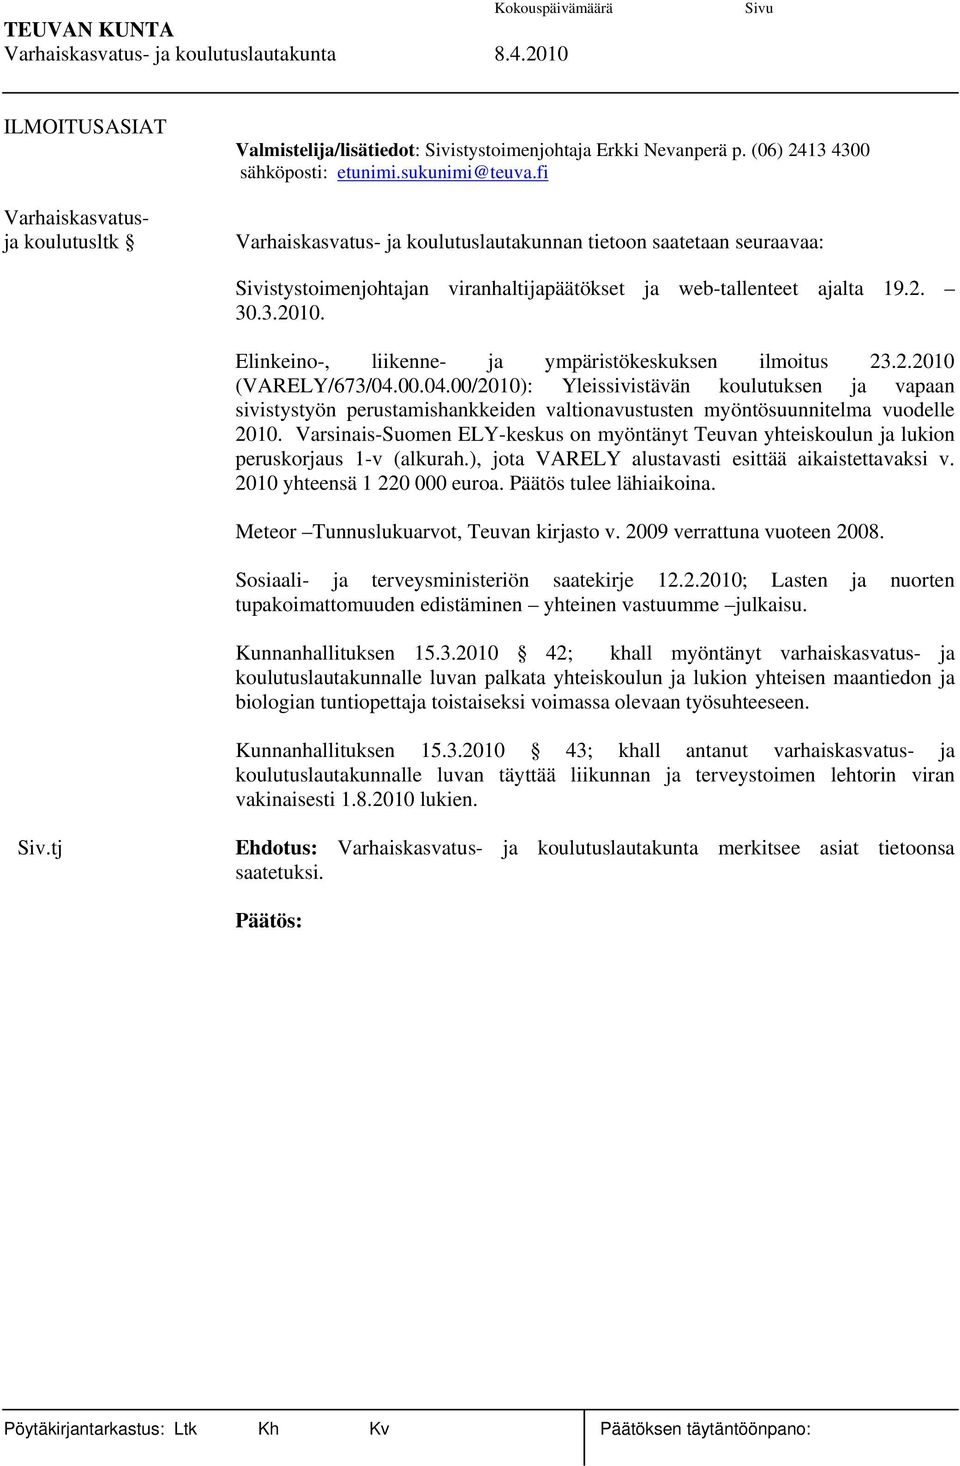 Elinkeino-, liikenne- ja ympäristökeskuksen ilmoitus 23.2.2010 (VARELY/673/04.